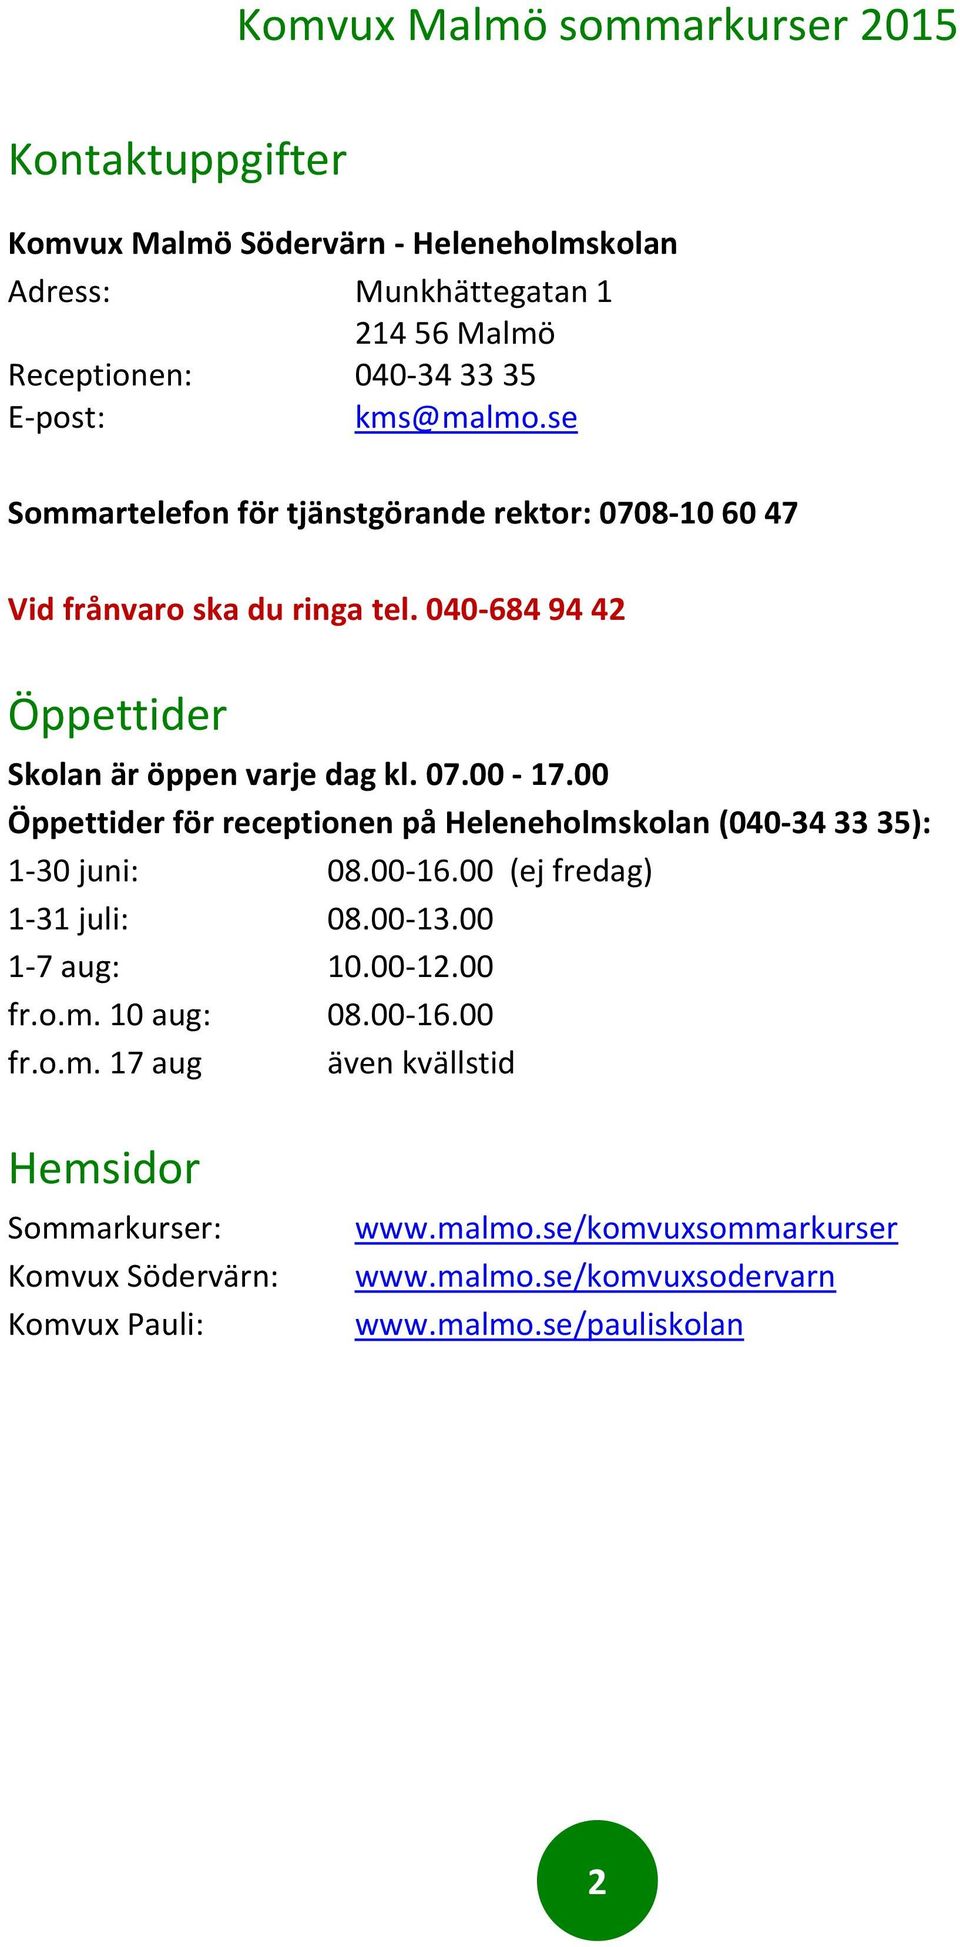 00 Öppettider för receptionen på Heleneholmskolan (040-34 33 35): 1-30 juni: 08.00-16.00 (ej fredag) 1-31 juli: 08.00-13.00 1-7 aug: 10.00-12.00 fr.o.m. 10 aug: 08.